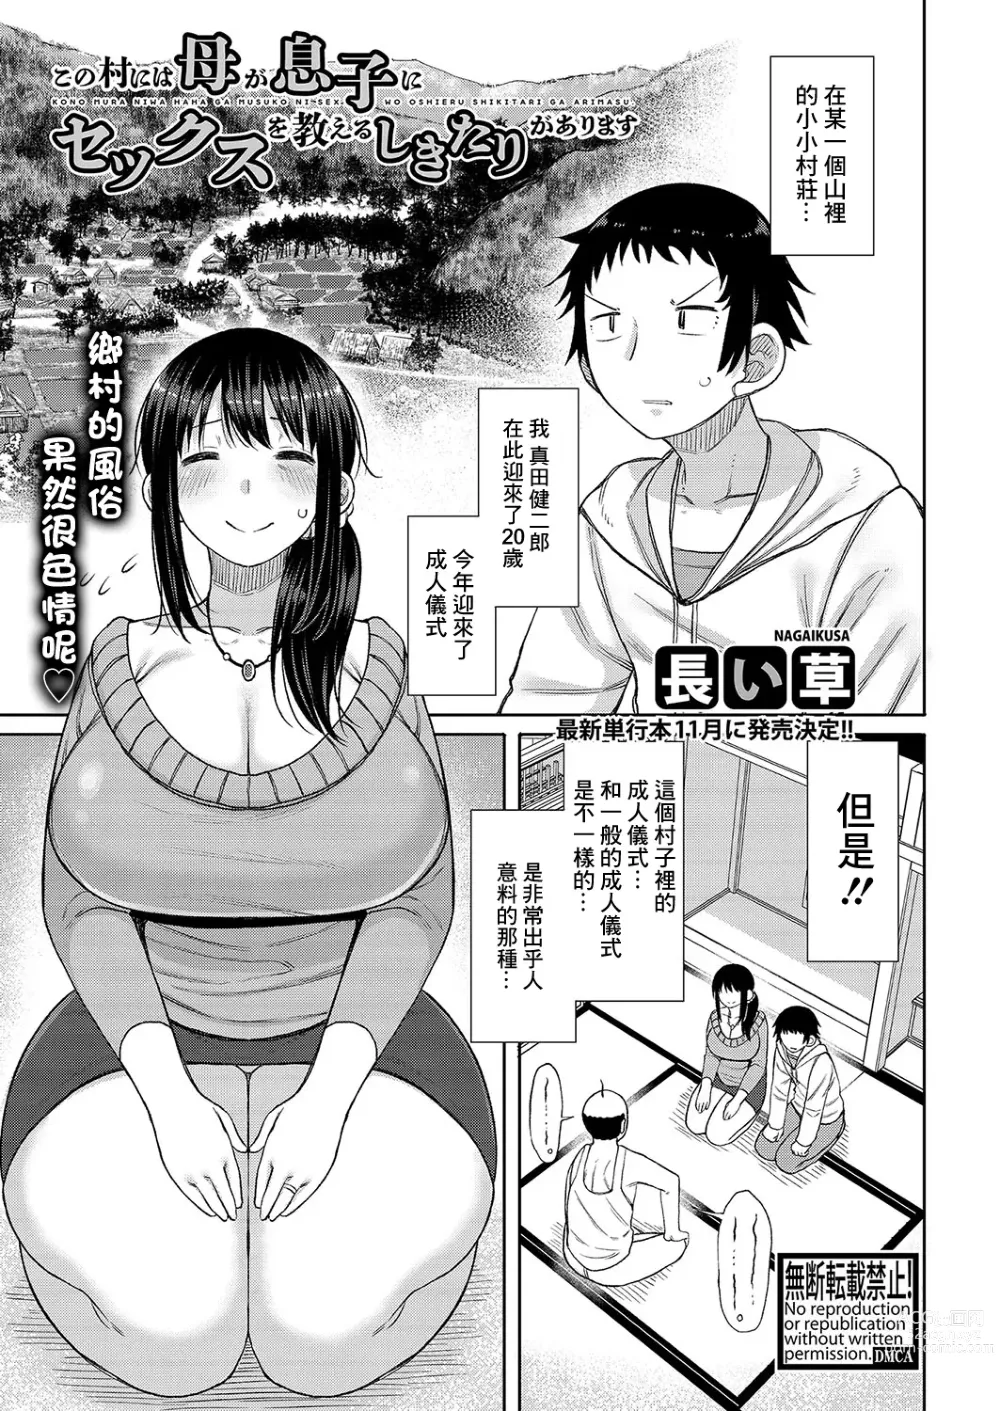 Page 1 of manga Kono Mura ni wa Haha ga Musuko ni Sex o Oshieru Shikitari ga Arimasu